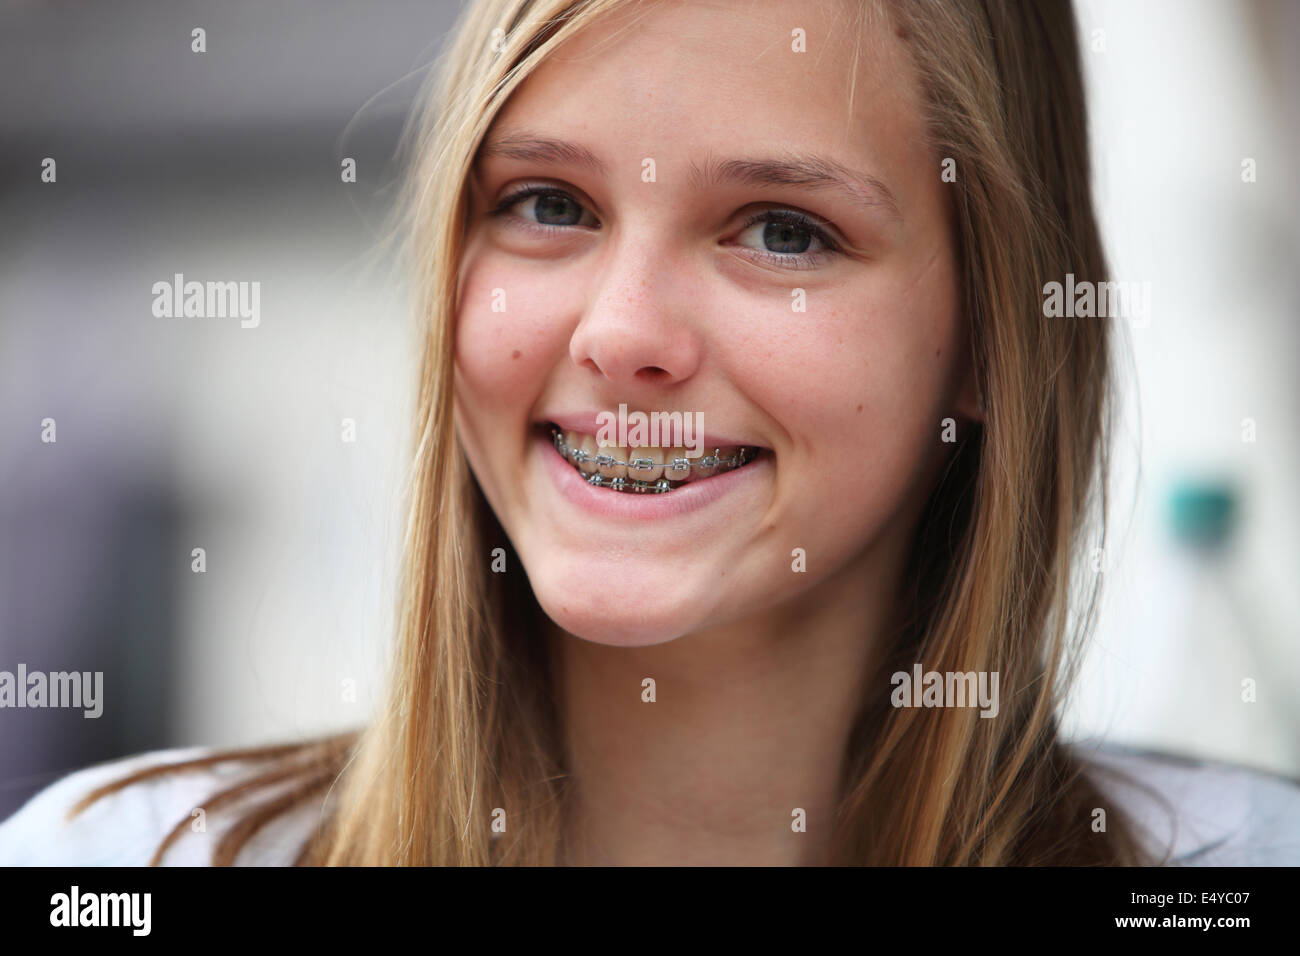 Giovane ragazza adolescente con bretelle ortodontico Foto Stock